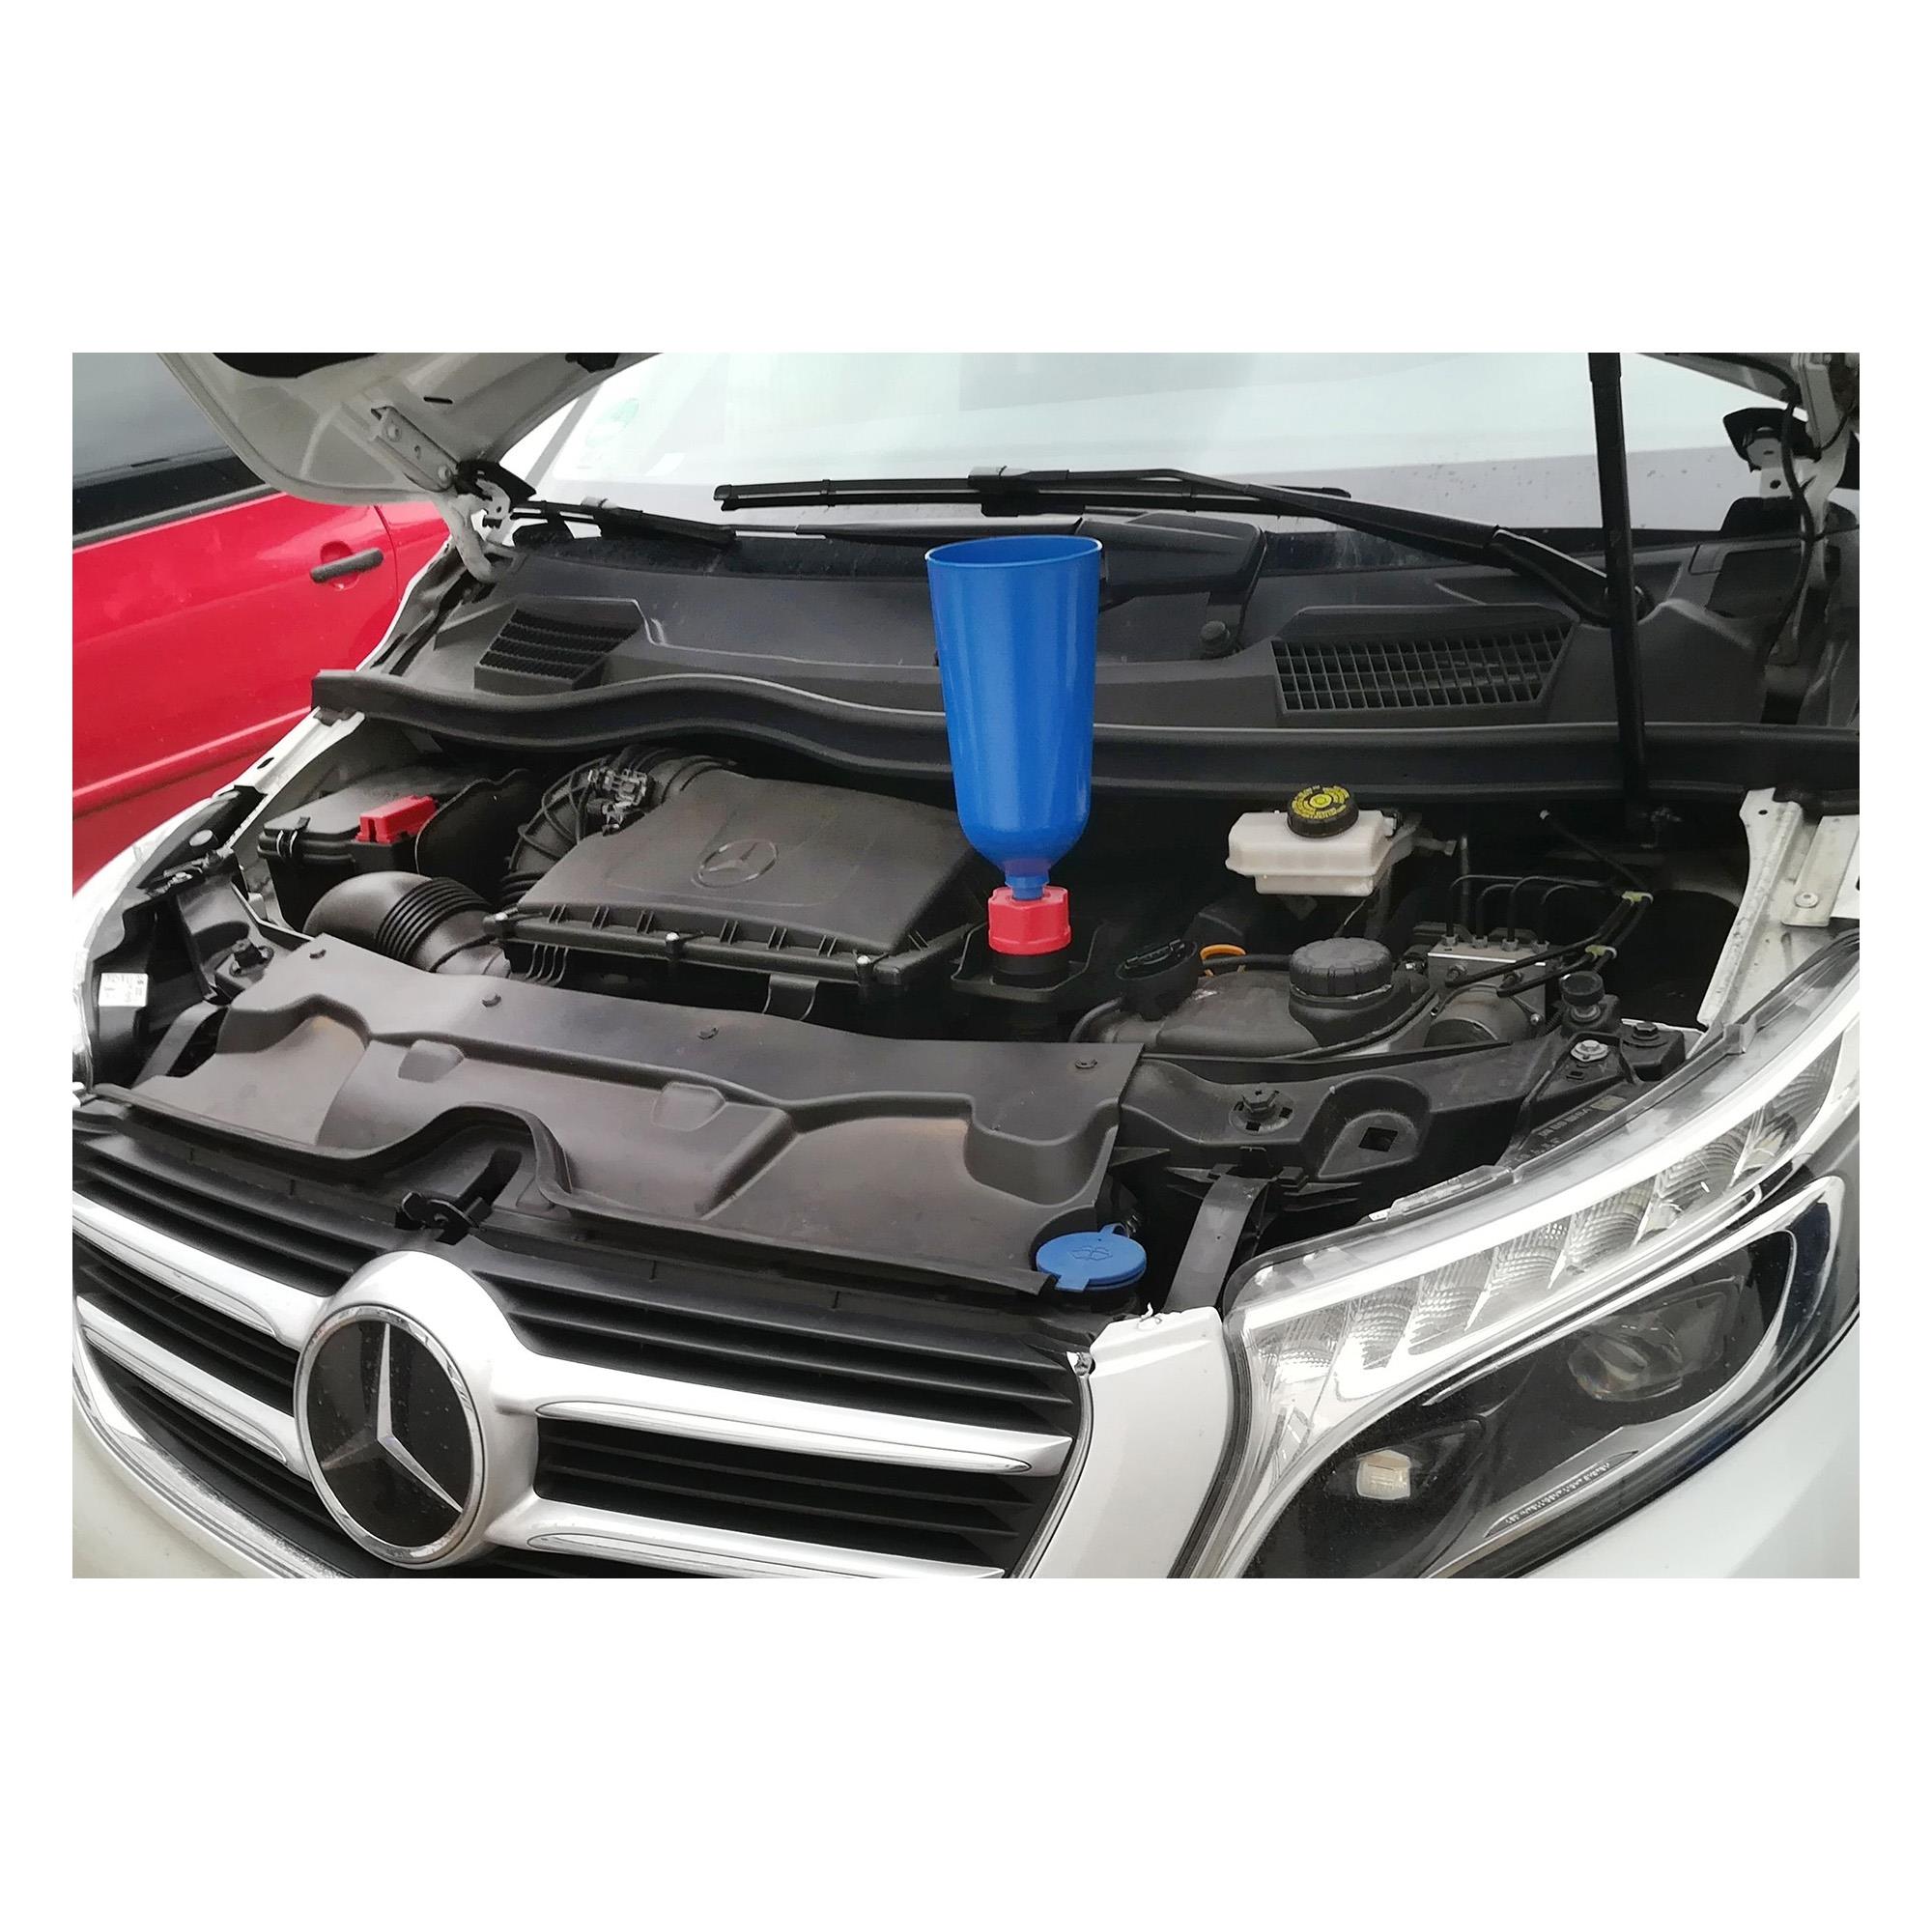 Öl-Einfülltrichter Trichter Bajonett Adapter Einfüllstutzen für Volvo Mazda  - , 7,99 €